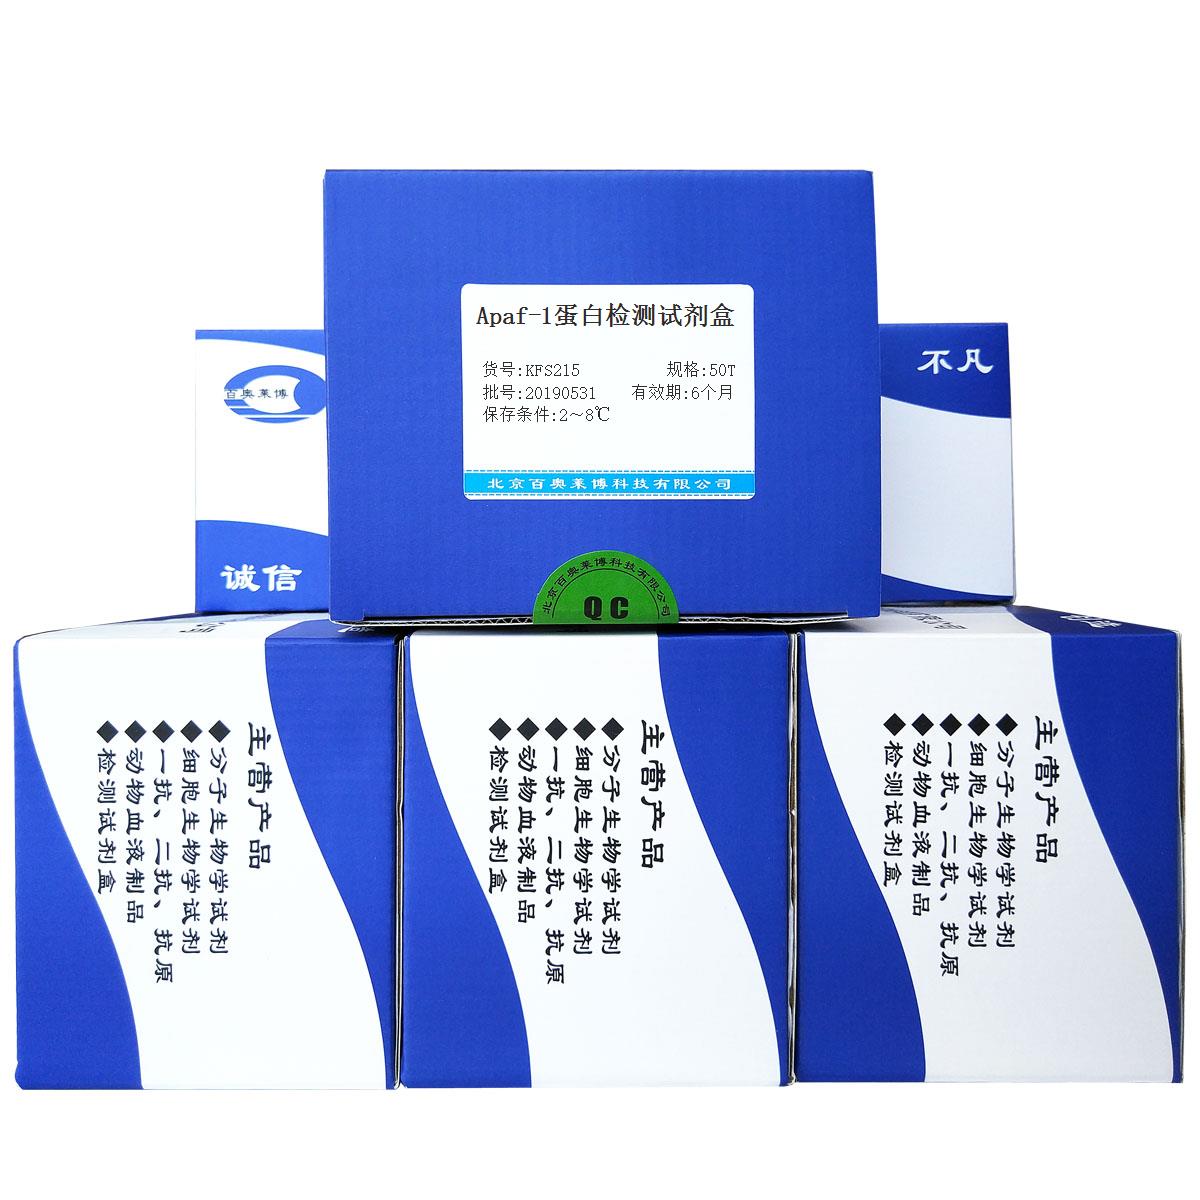 Apaf-1蛋白检测试剂盒北京供应商